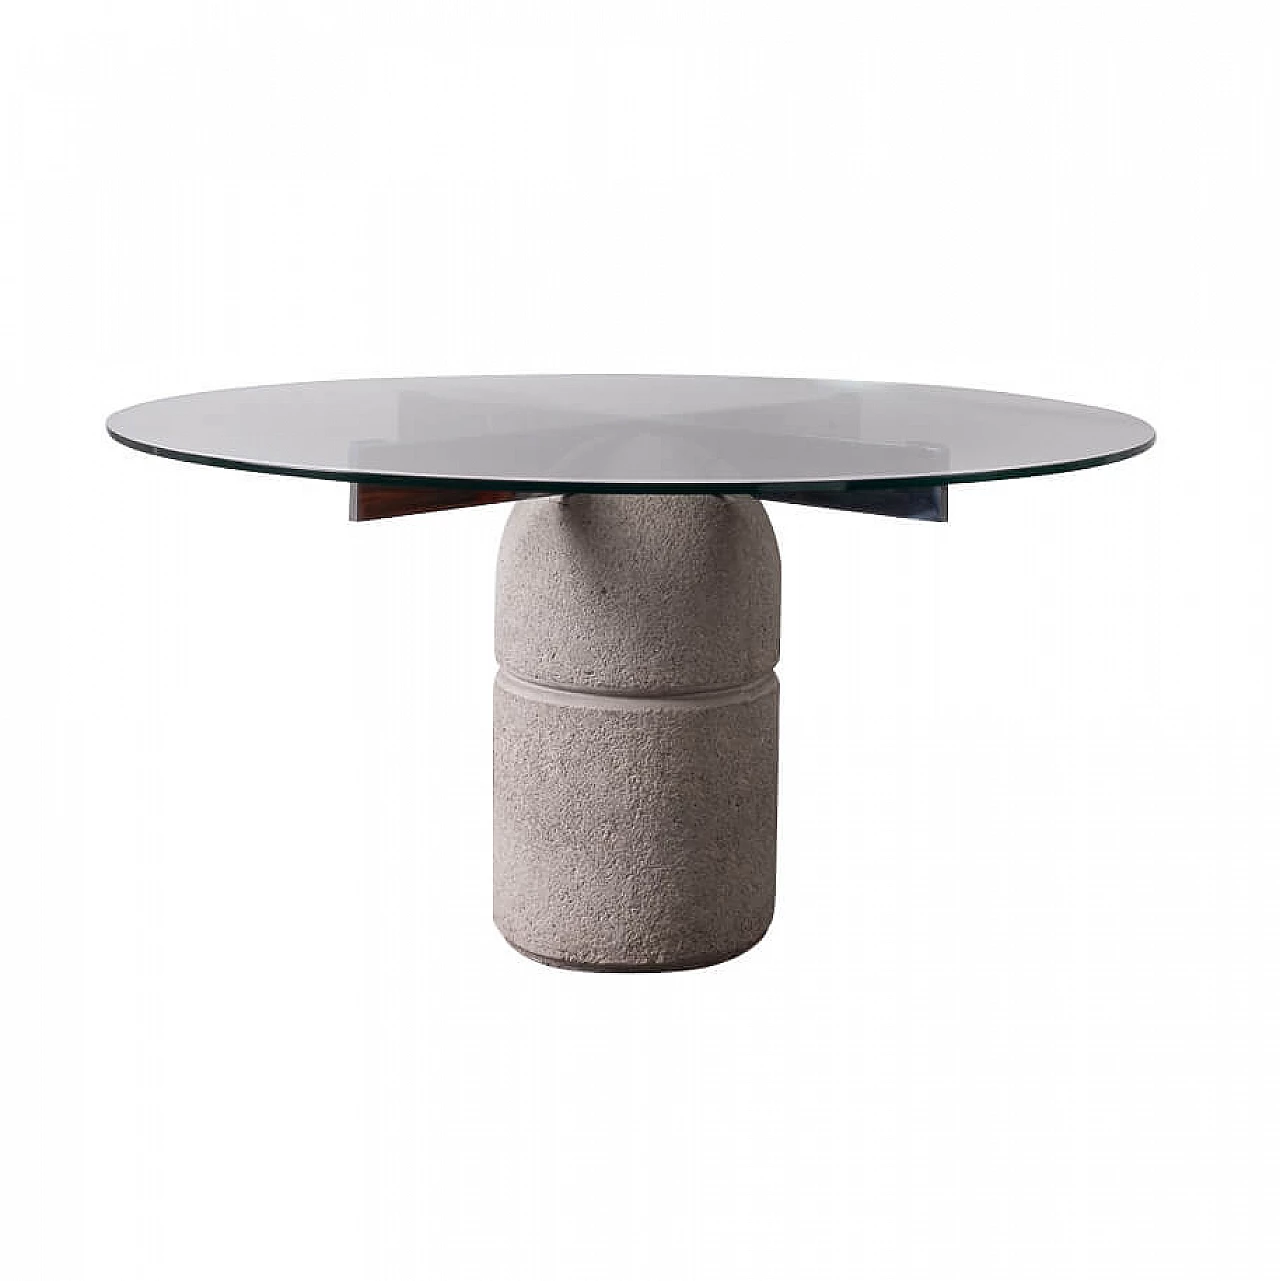 Paracarro table by Giovanni Offredi for Saporiti, 1970s 1253138